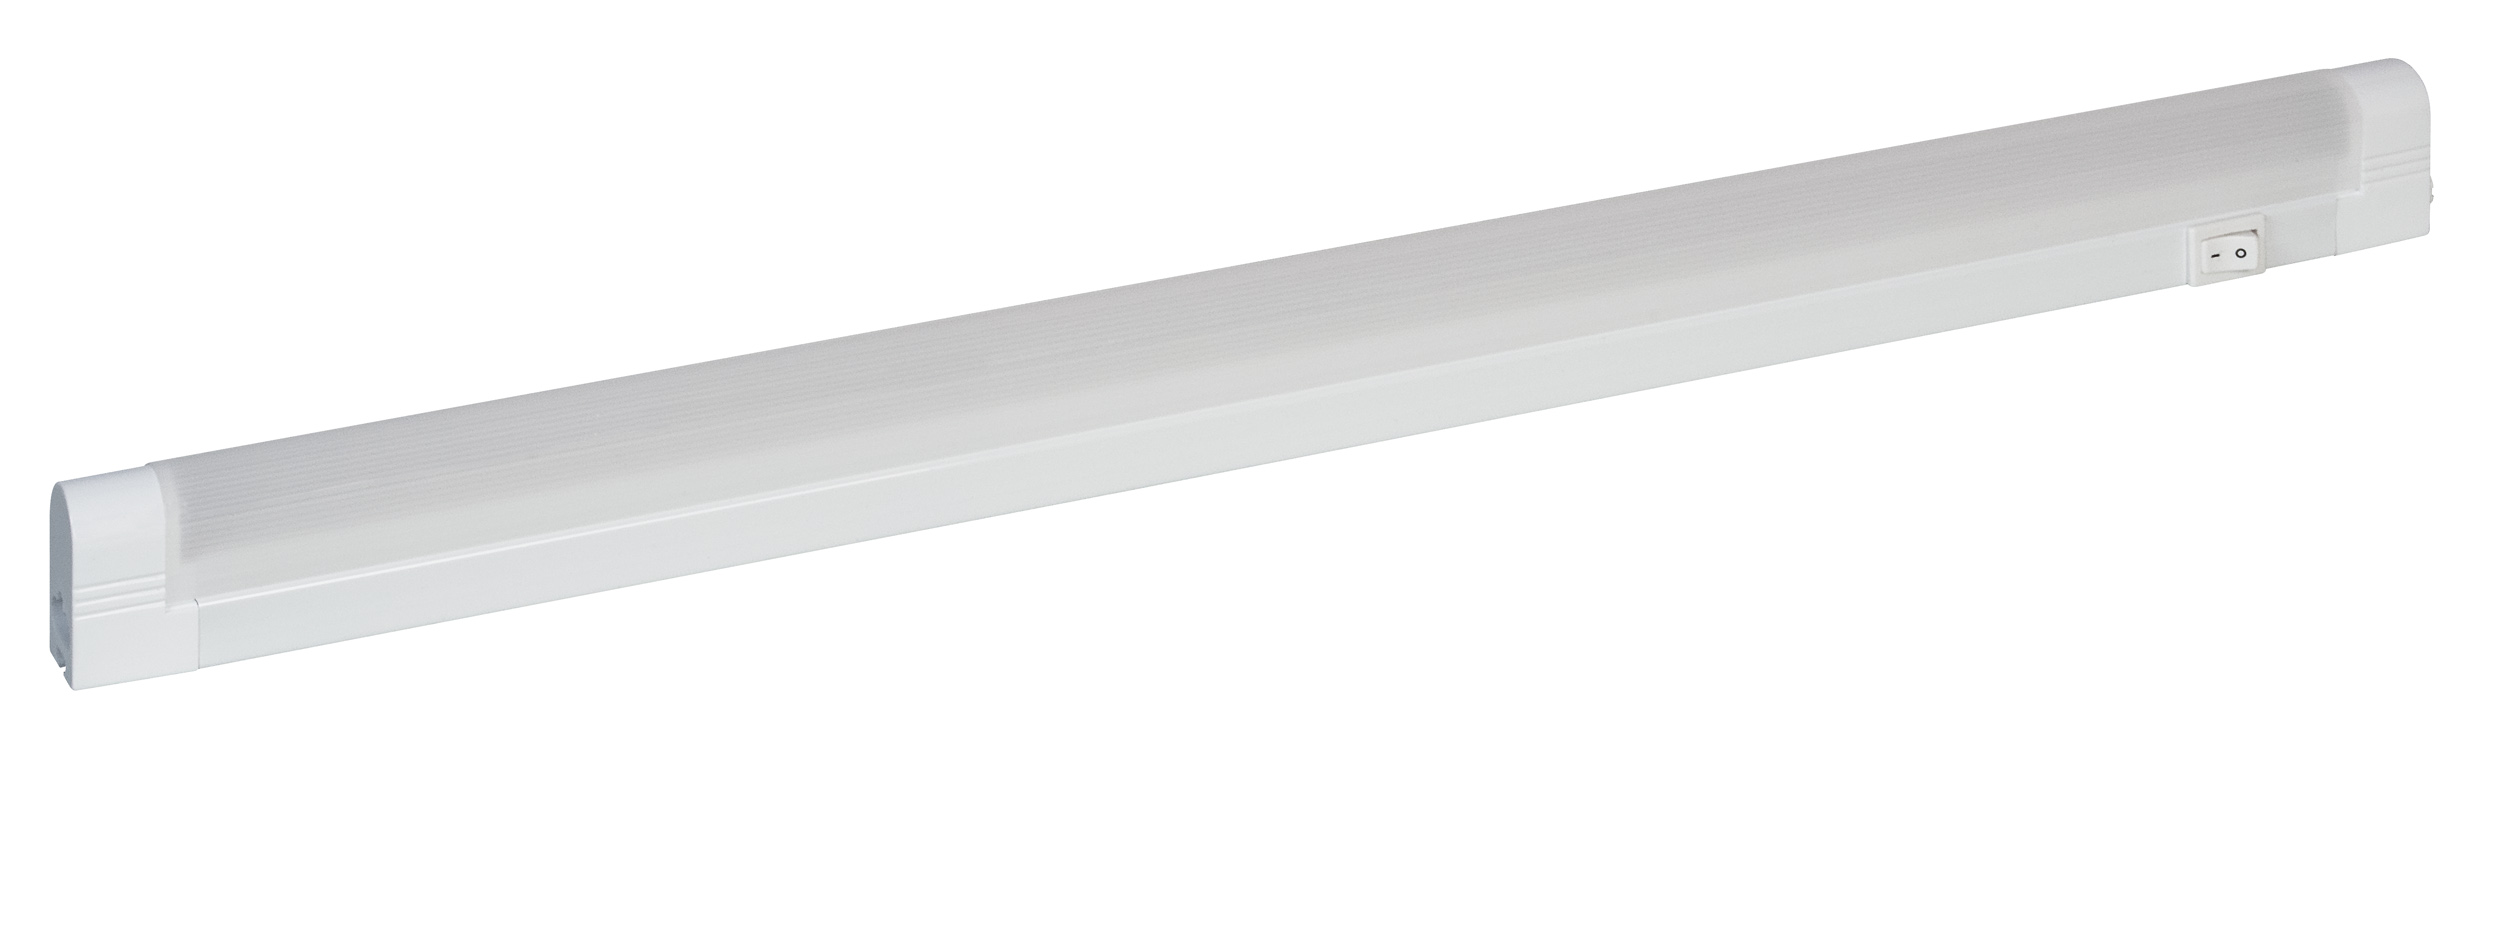 Müller Licht LED Unterbauleuchte Linex Switch Tone 30 weiß 4W 340lm Extra Warmweiß-Kaltweiß